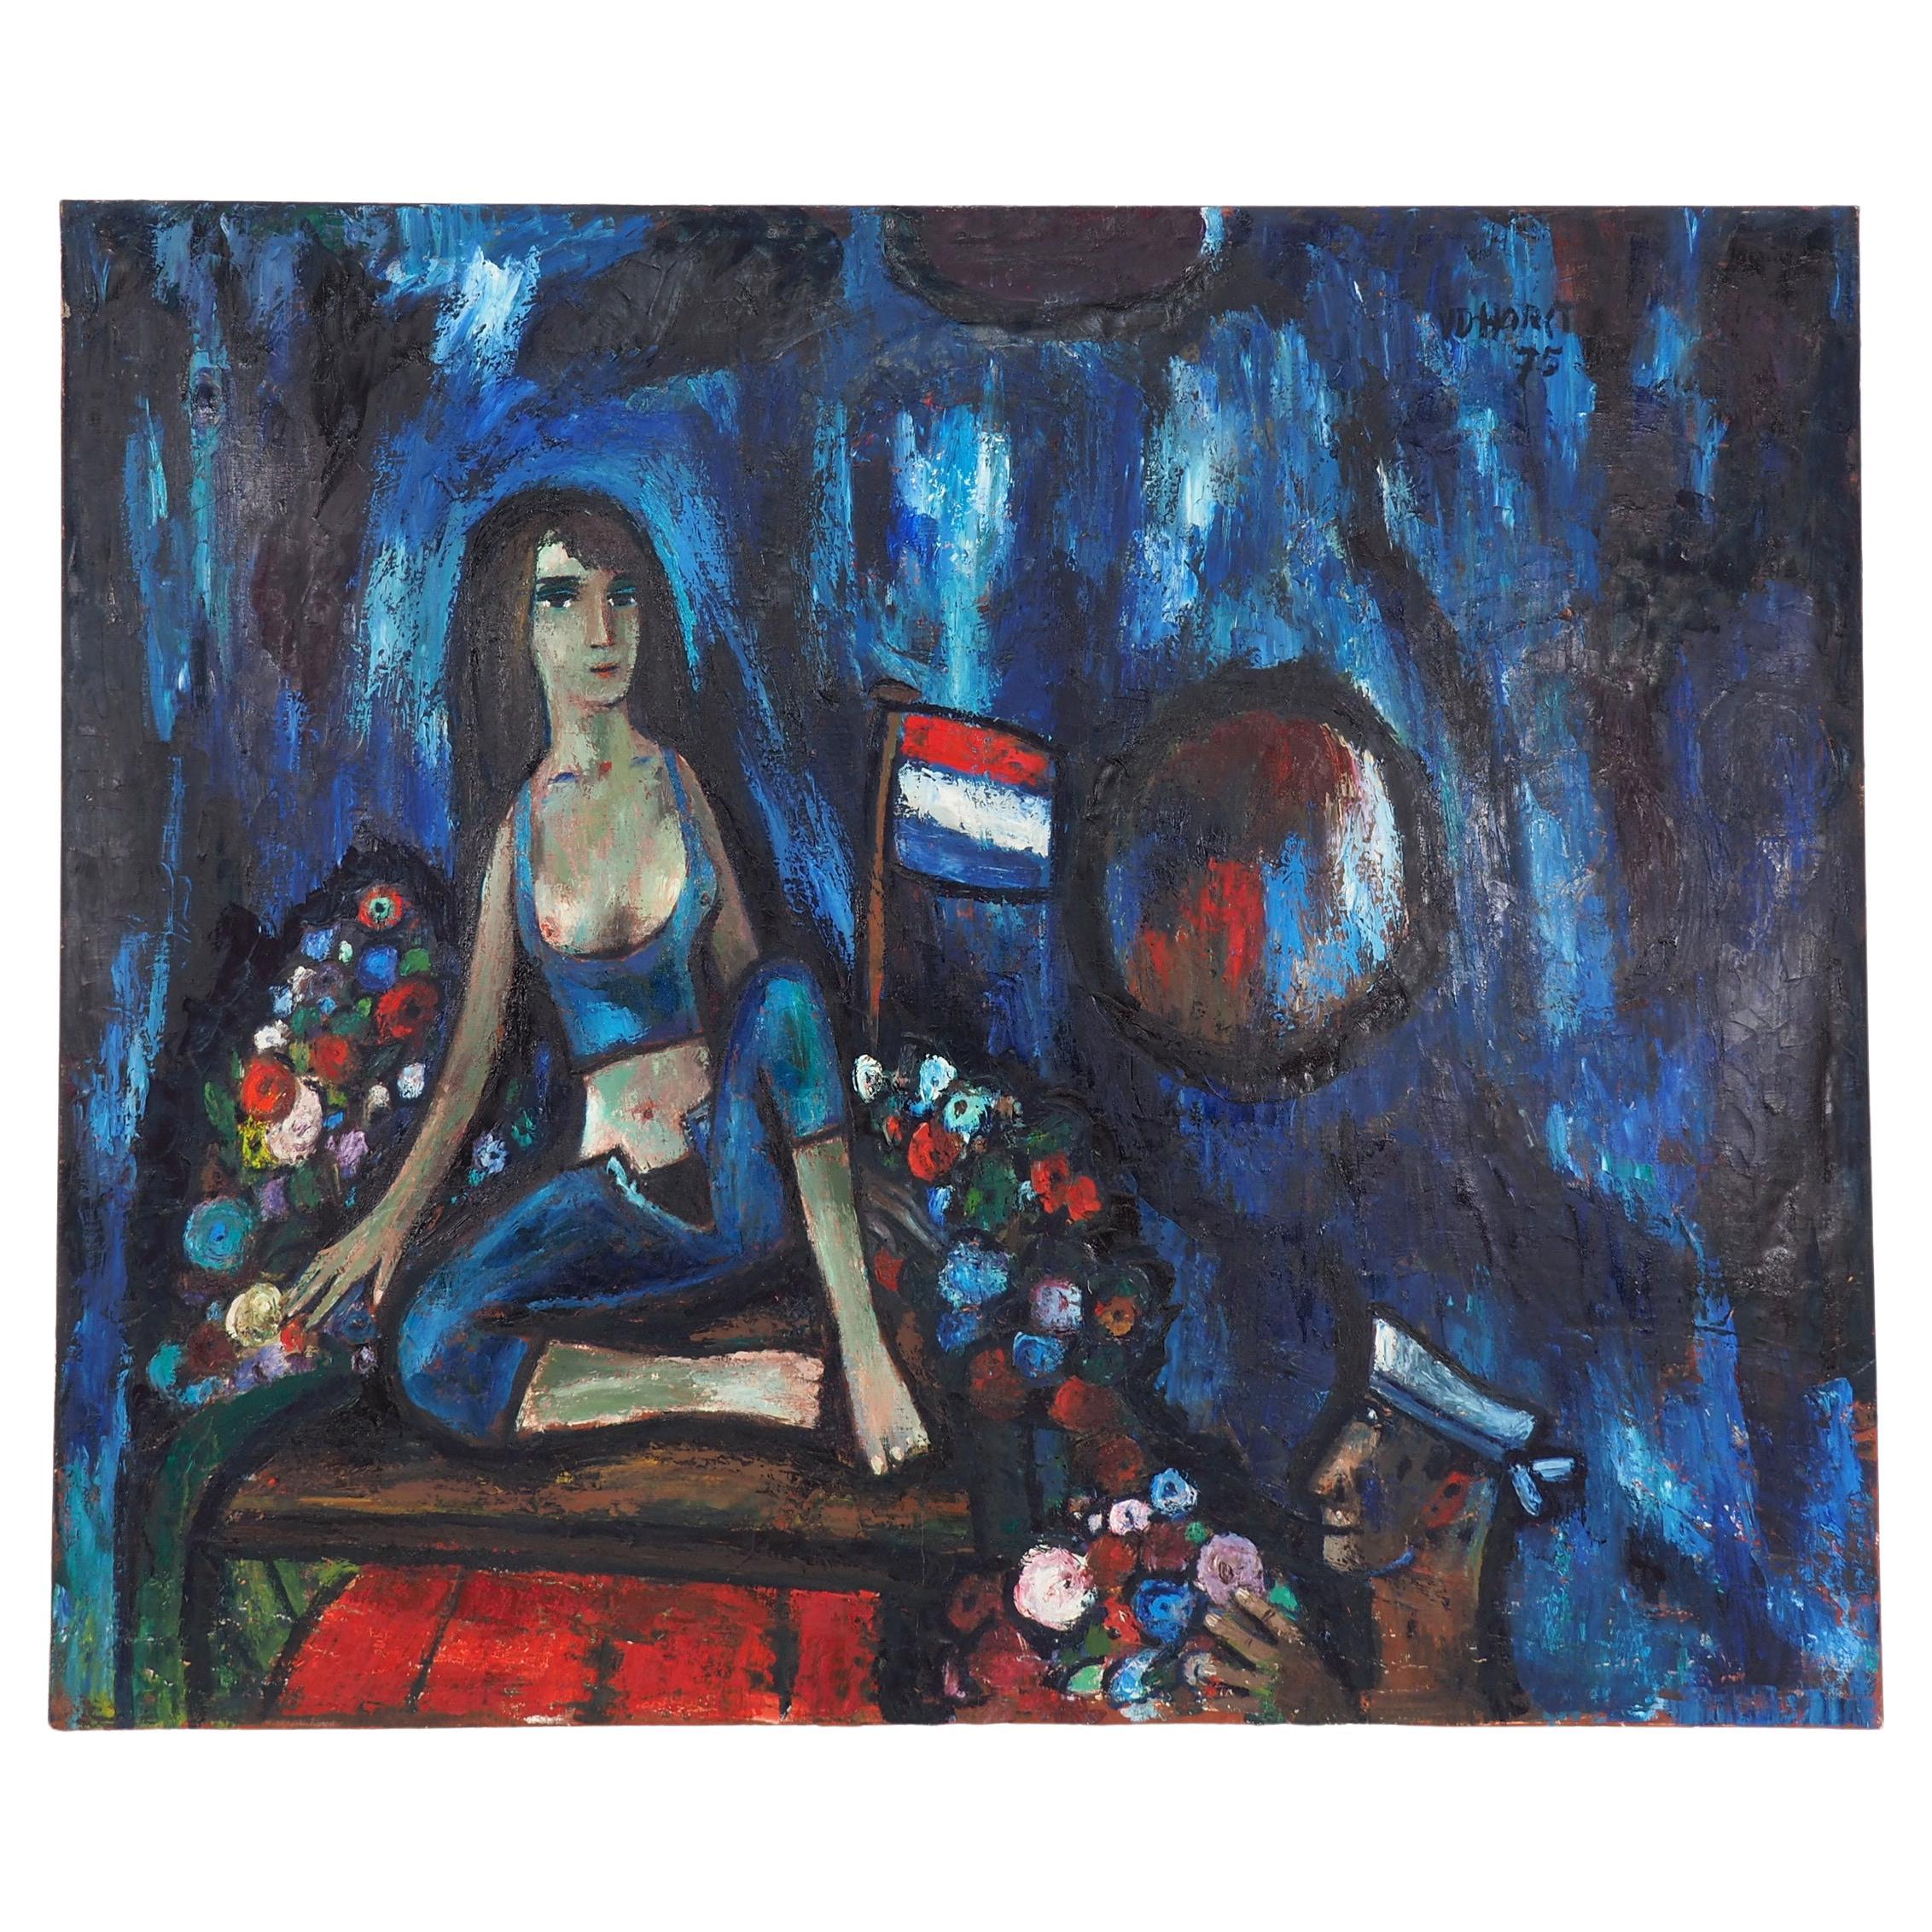 Grande peinture à l'huile de Theo van der Horst représentant une jeune fille et un marin